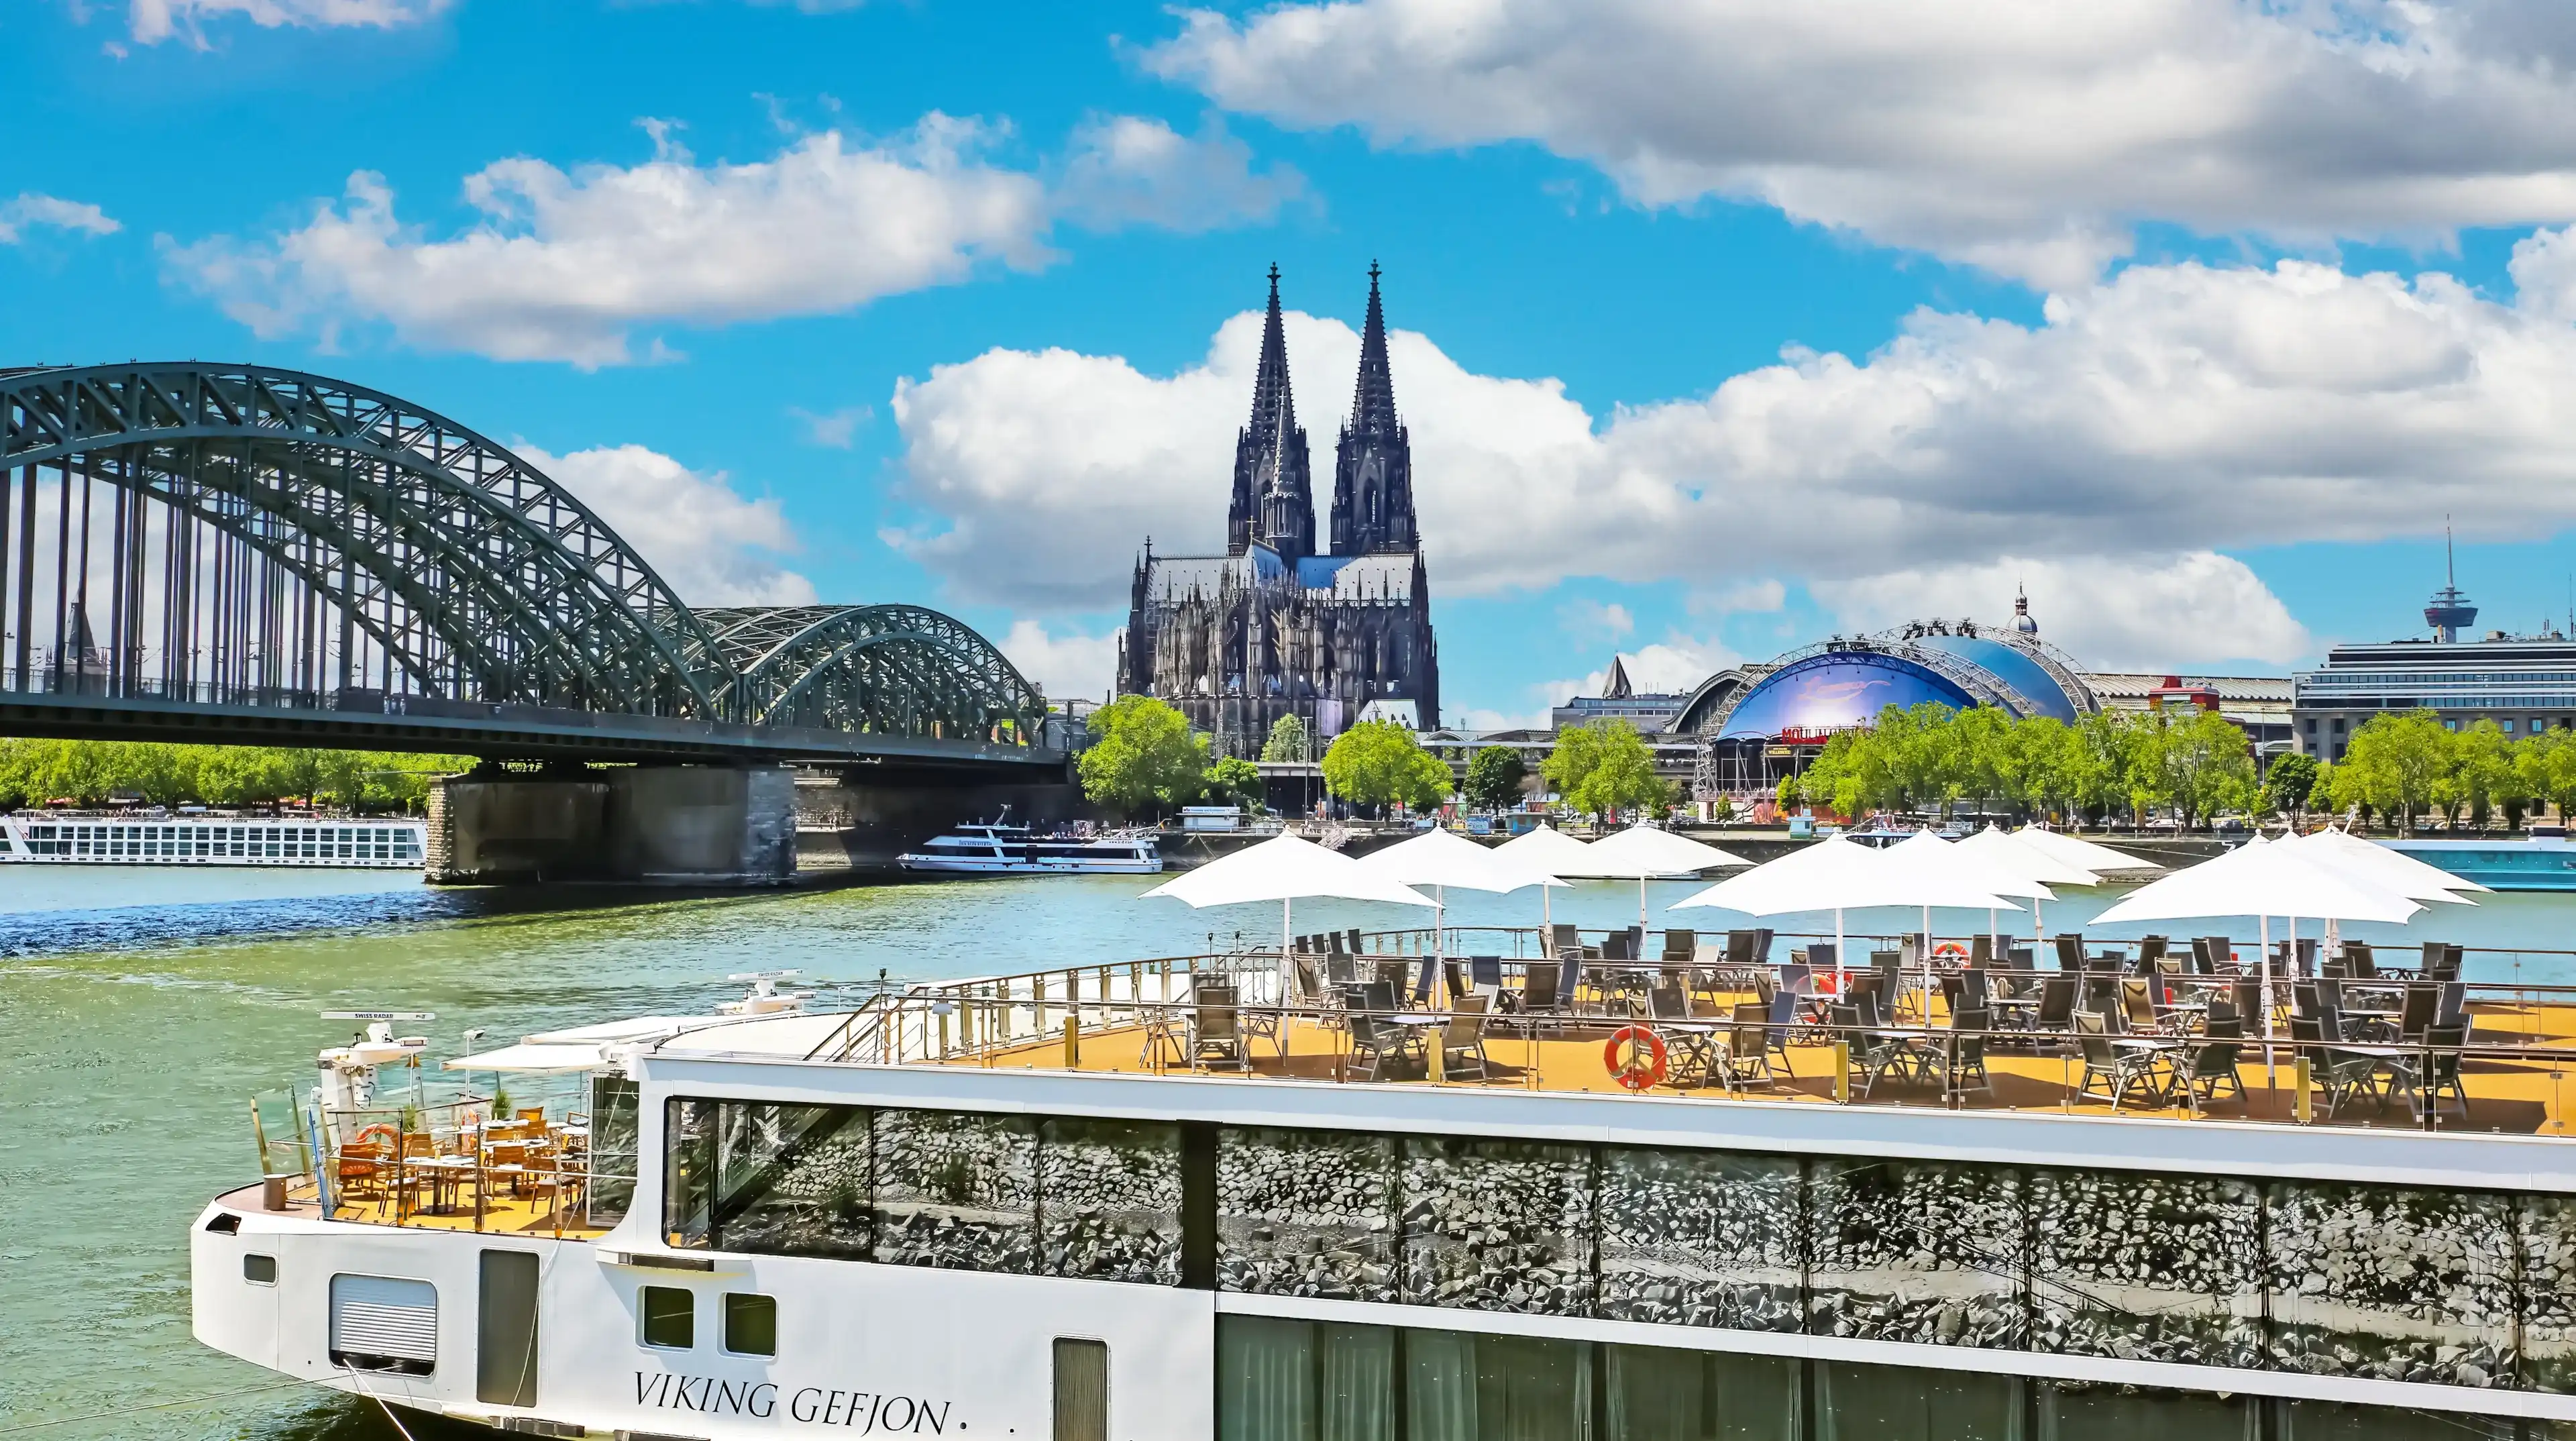 Best Köln hotels. Cheap hotels in Köln, Germany